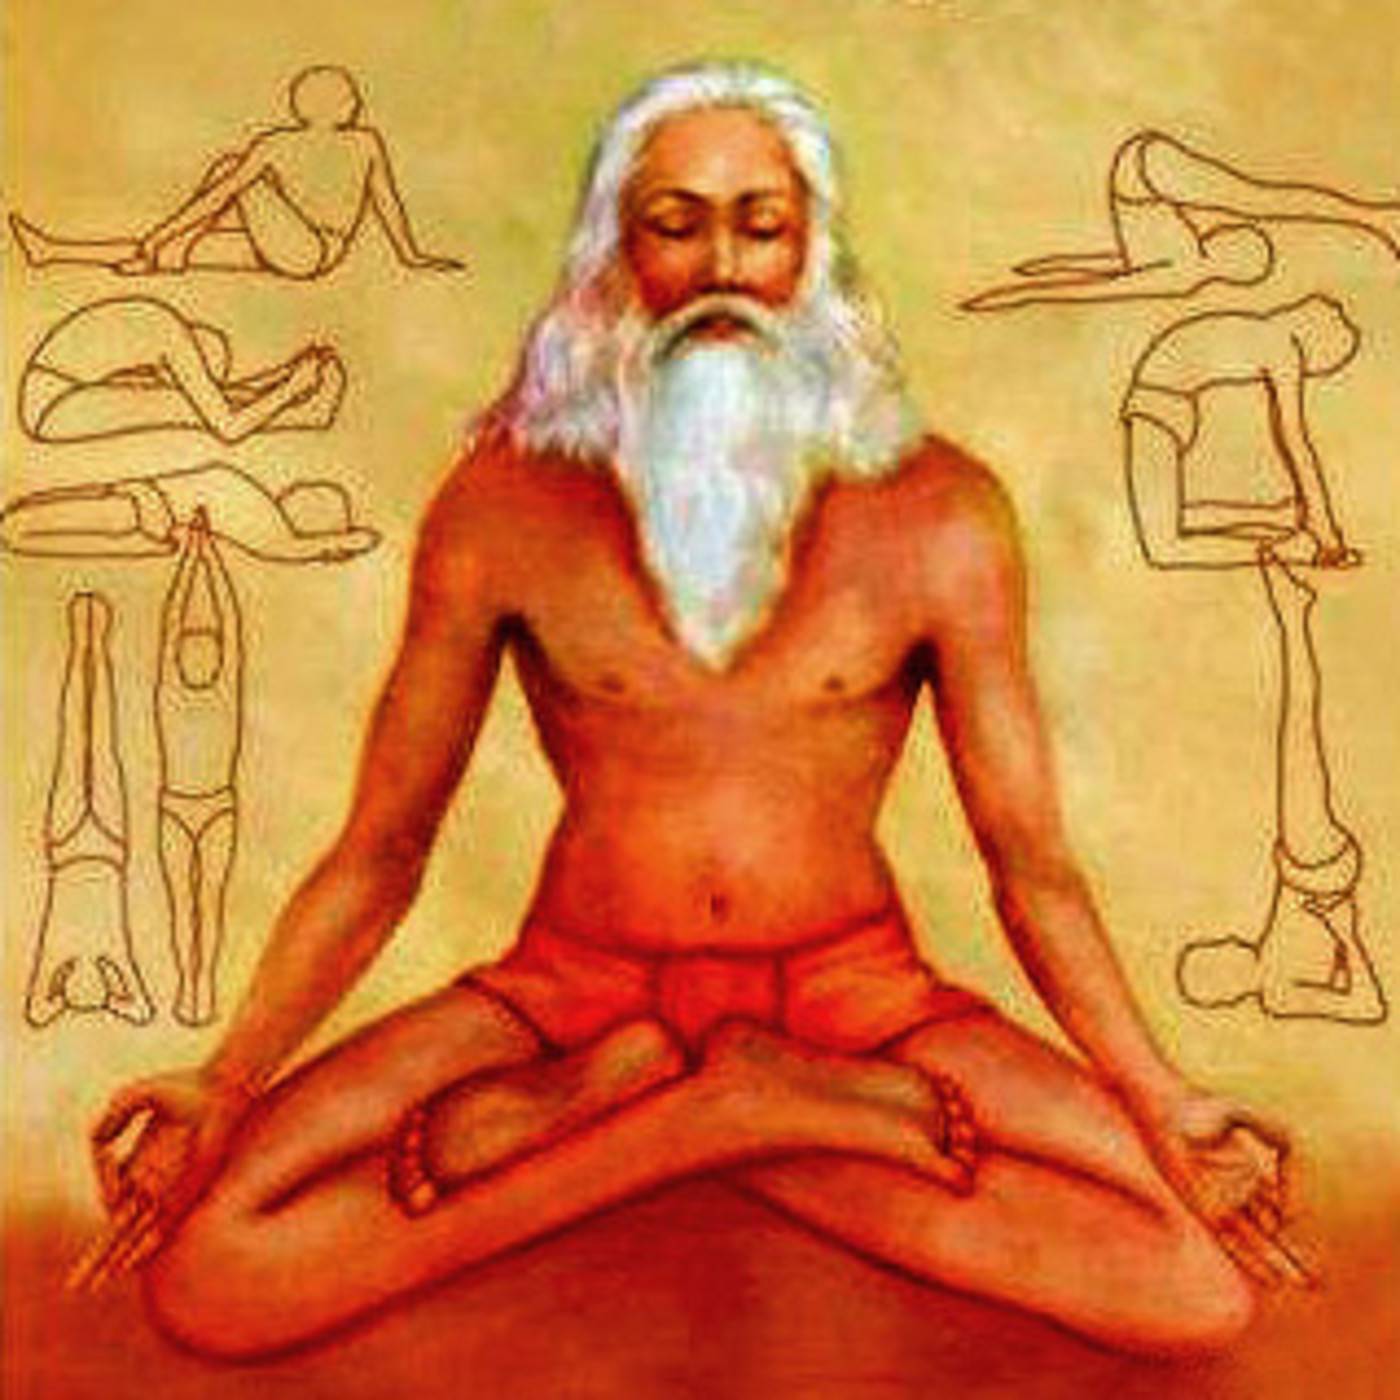 I. патанджали — философ и йогин. энциклопедия йоги